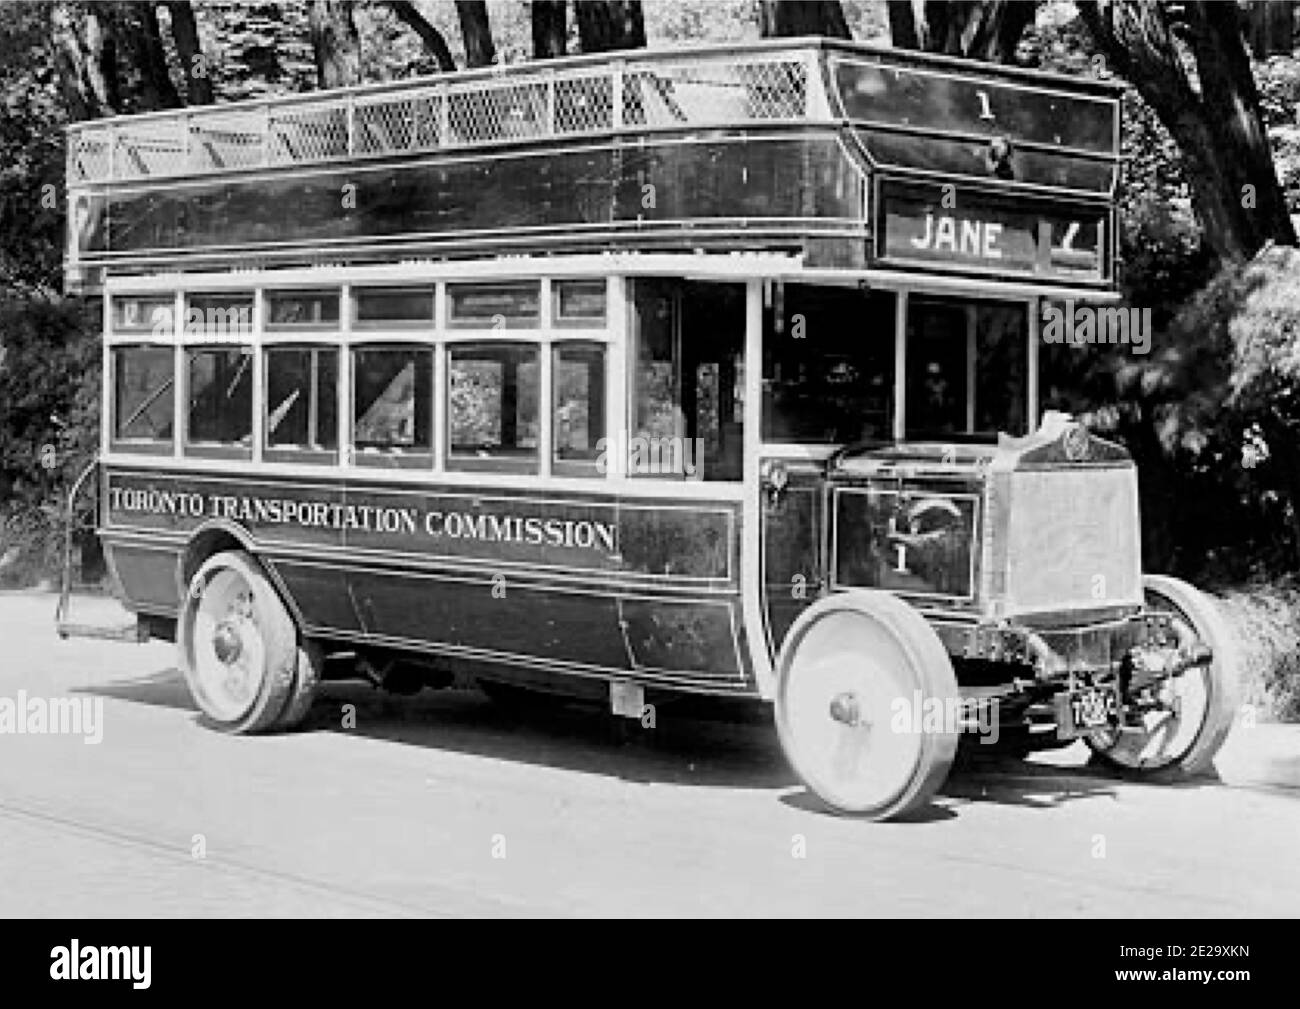 Fotografia d'epoca con la didascalia-raro autobus TTC a due piani-Toronto Transportation Commission numero 1, un modello 1921 5th Avenue Coach Company. Foto Stock